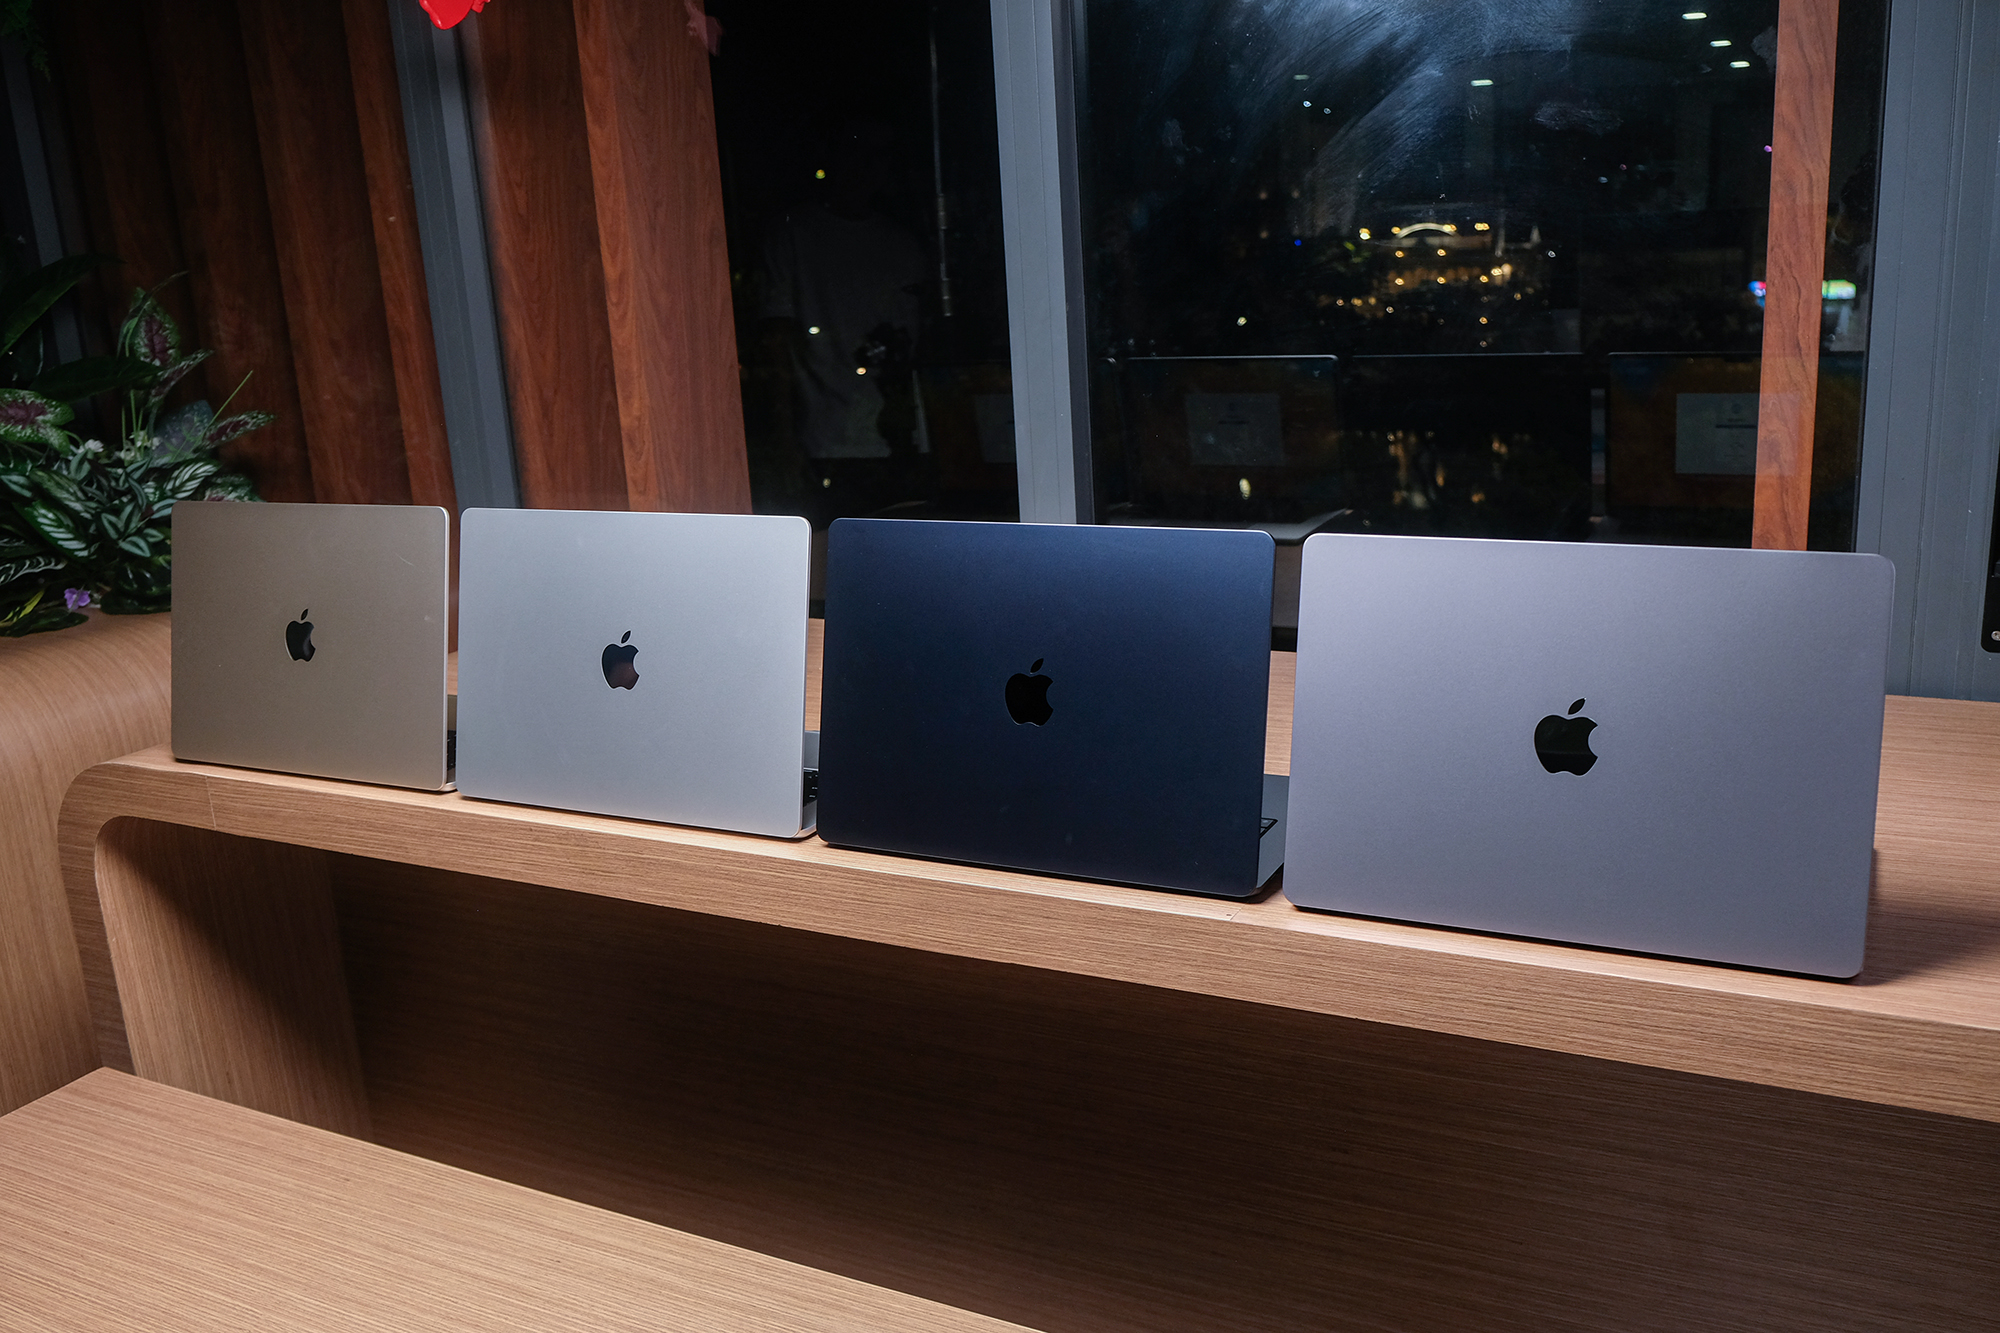 MacBook Air 15 inch về Việt Nam: Giá từ 32,99 triệu đồng, là "món hời" cho người dùng Mac? - Ảnh 1.